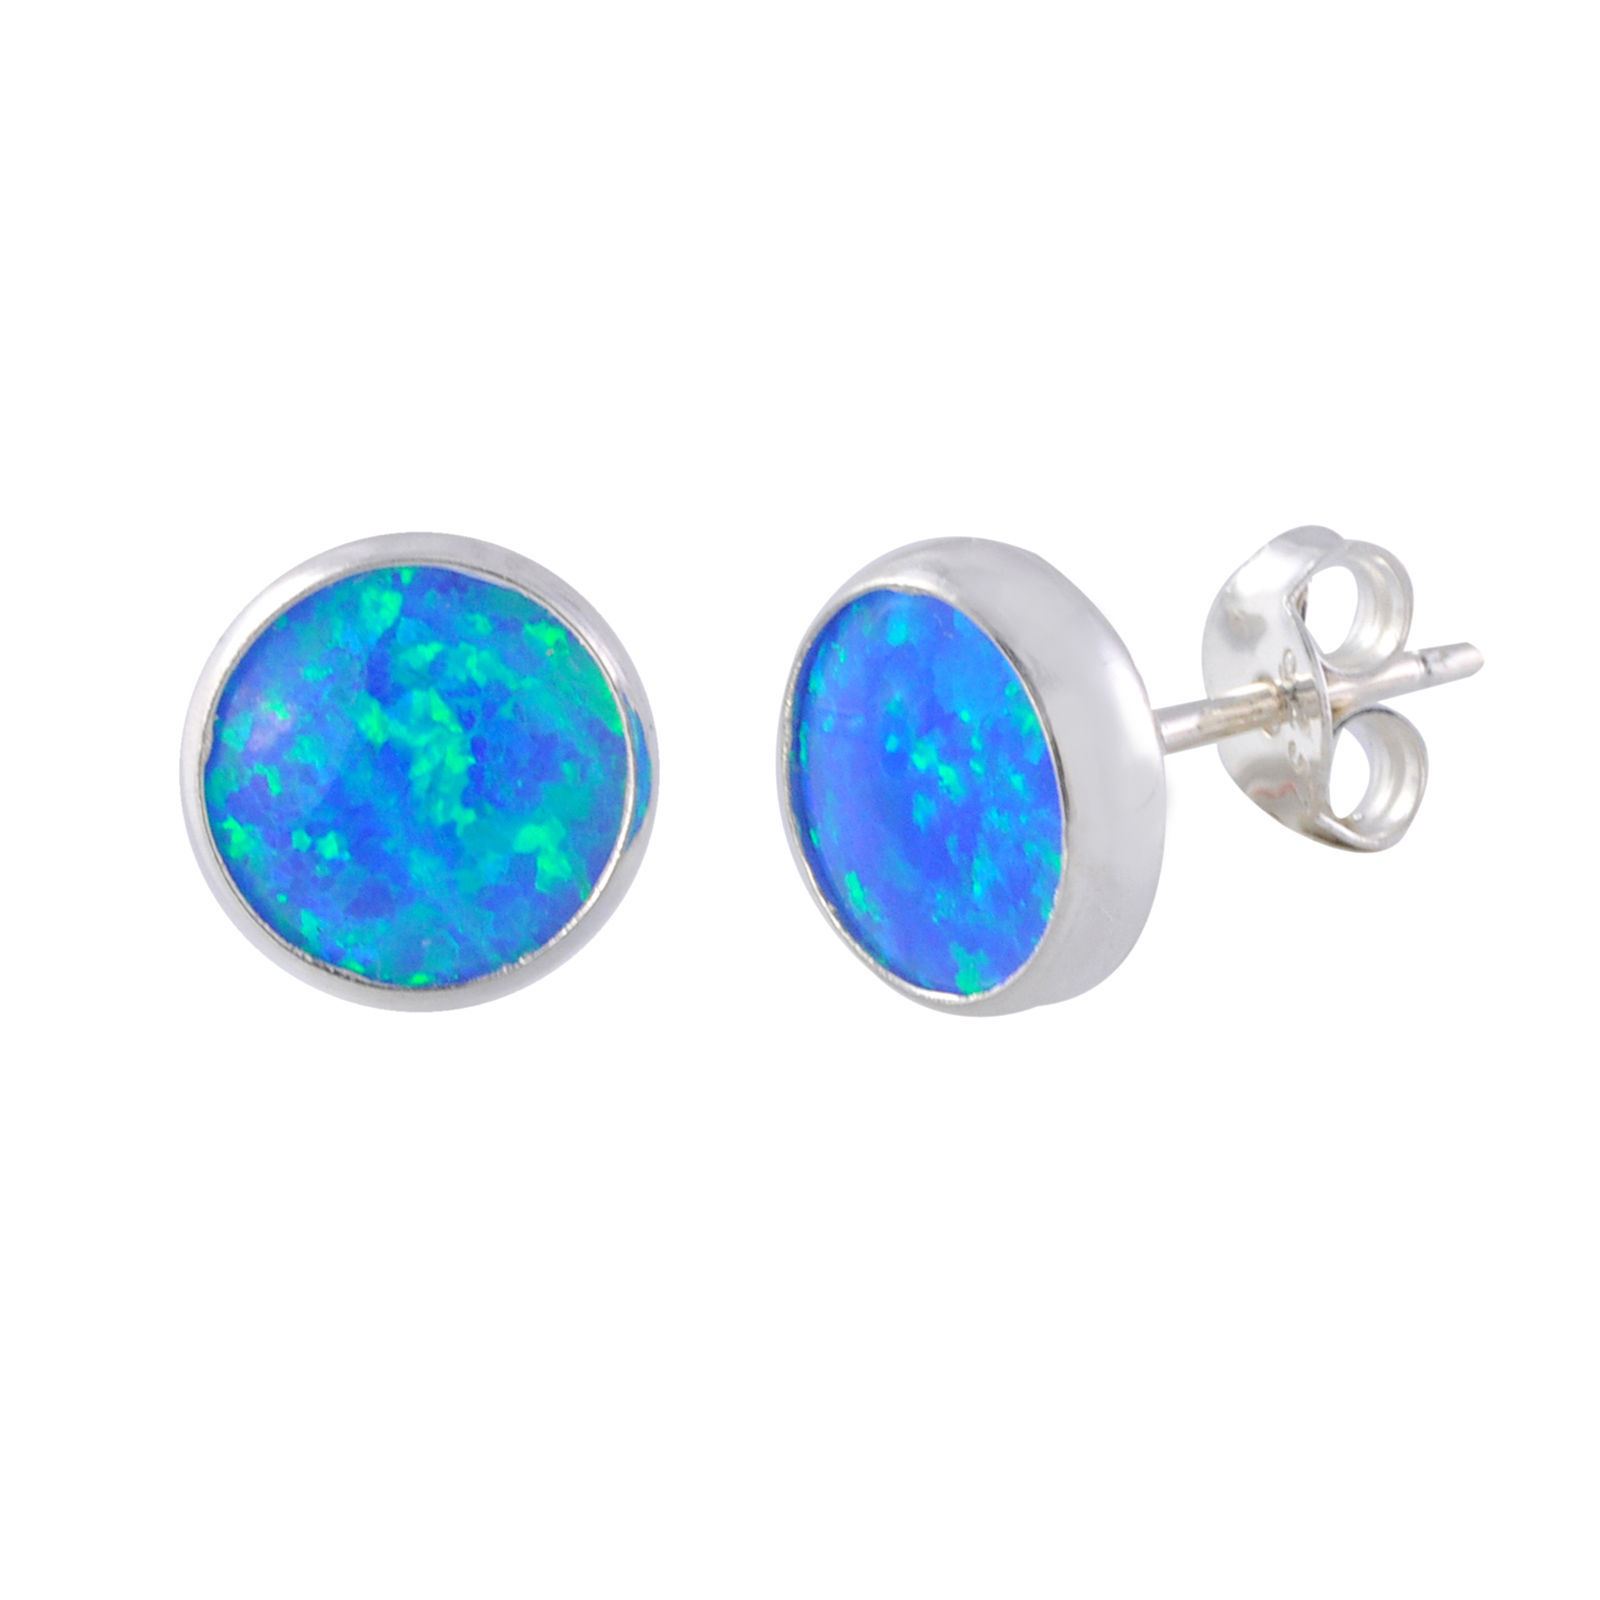 Sterling Silver Blue Green Opal Earring Studs 9mm Round - Earrings